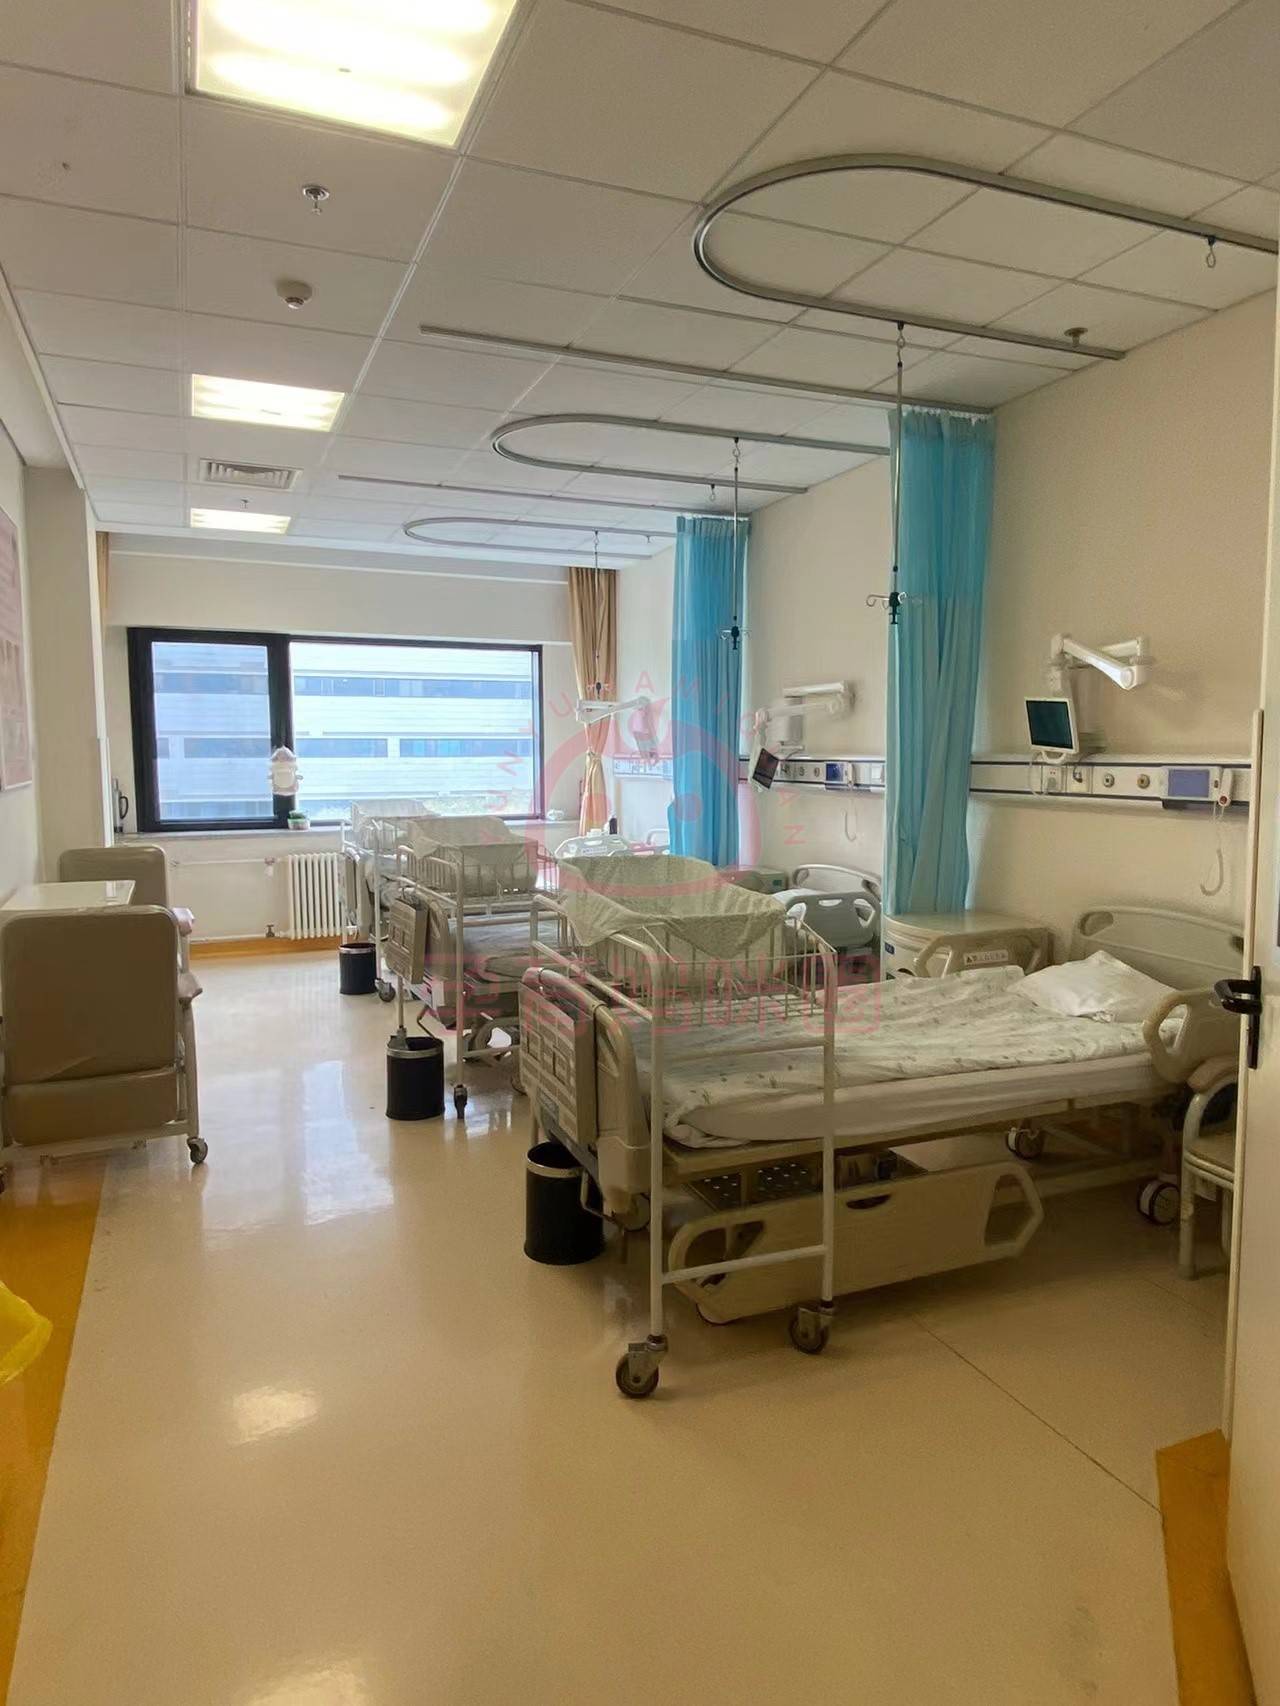 病房空间比较大,能存放物品的地方多北京天坛医院产科病房有单人间和